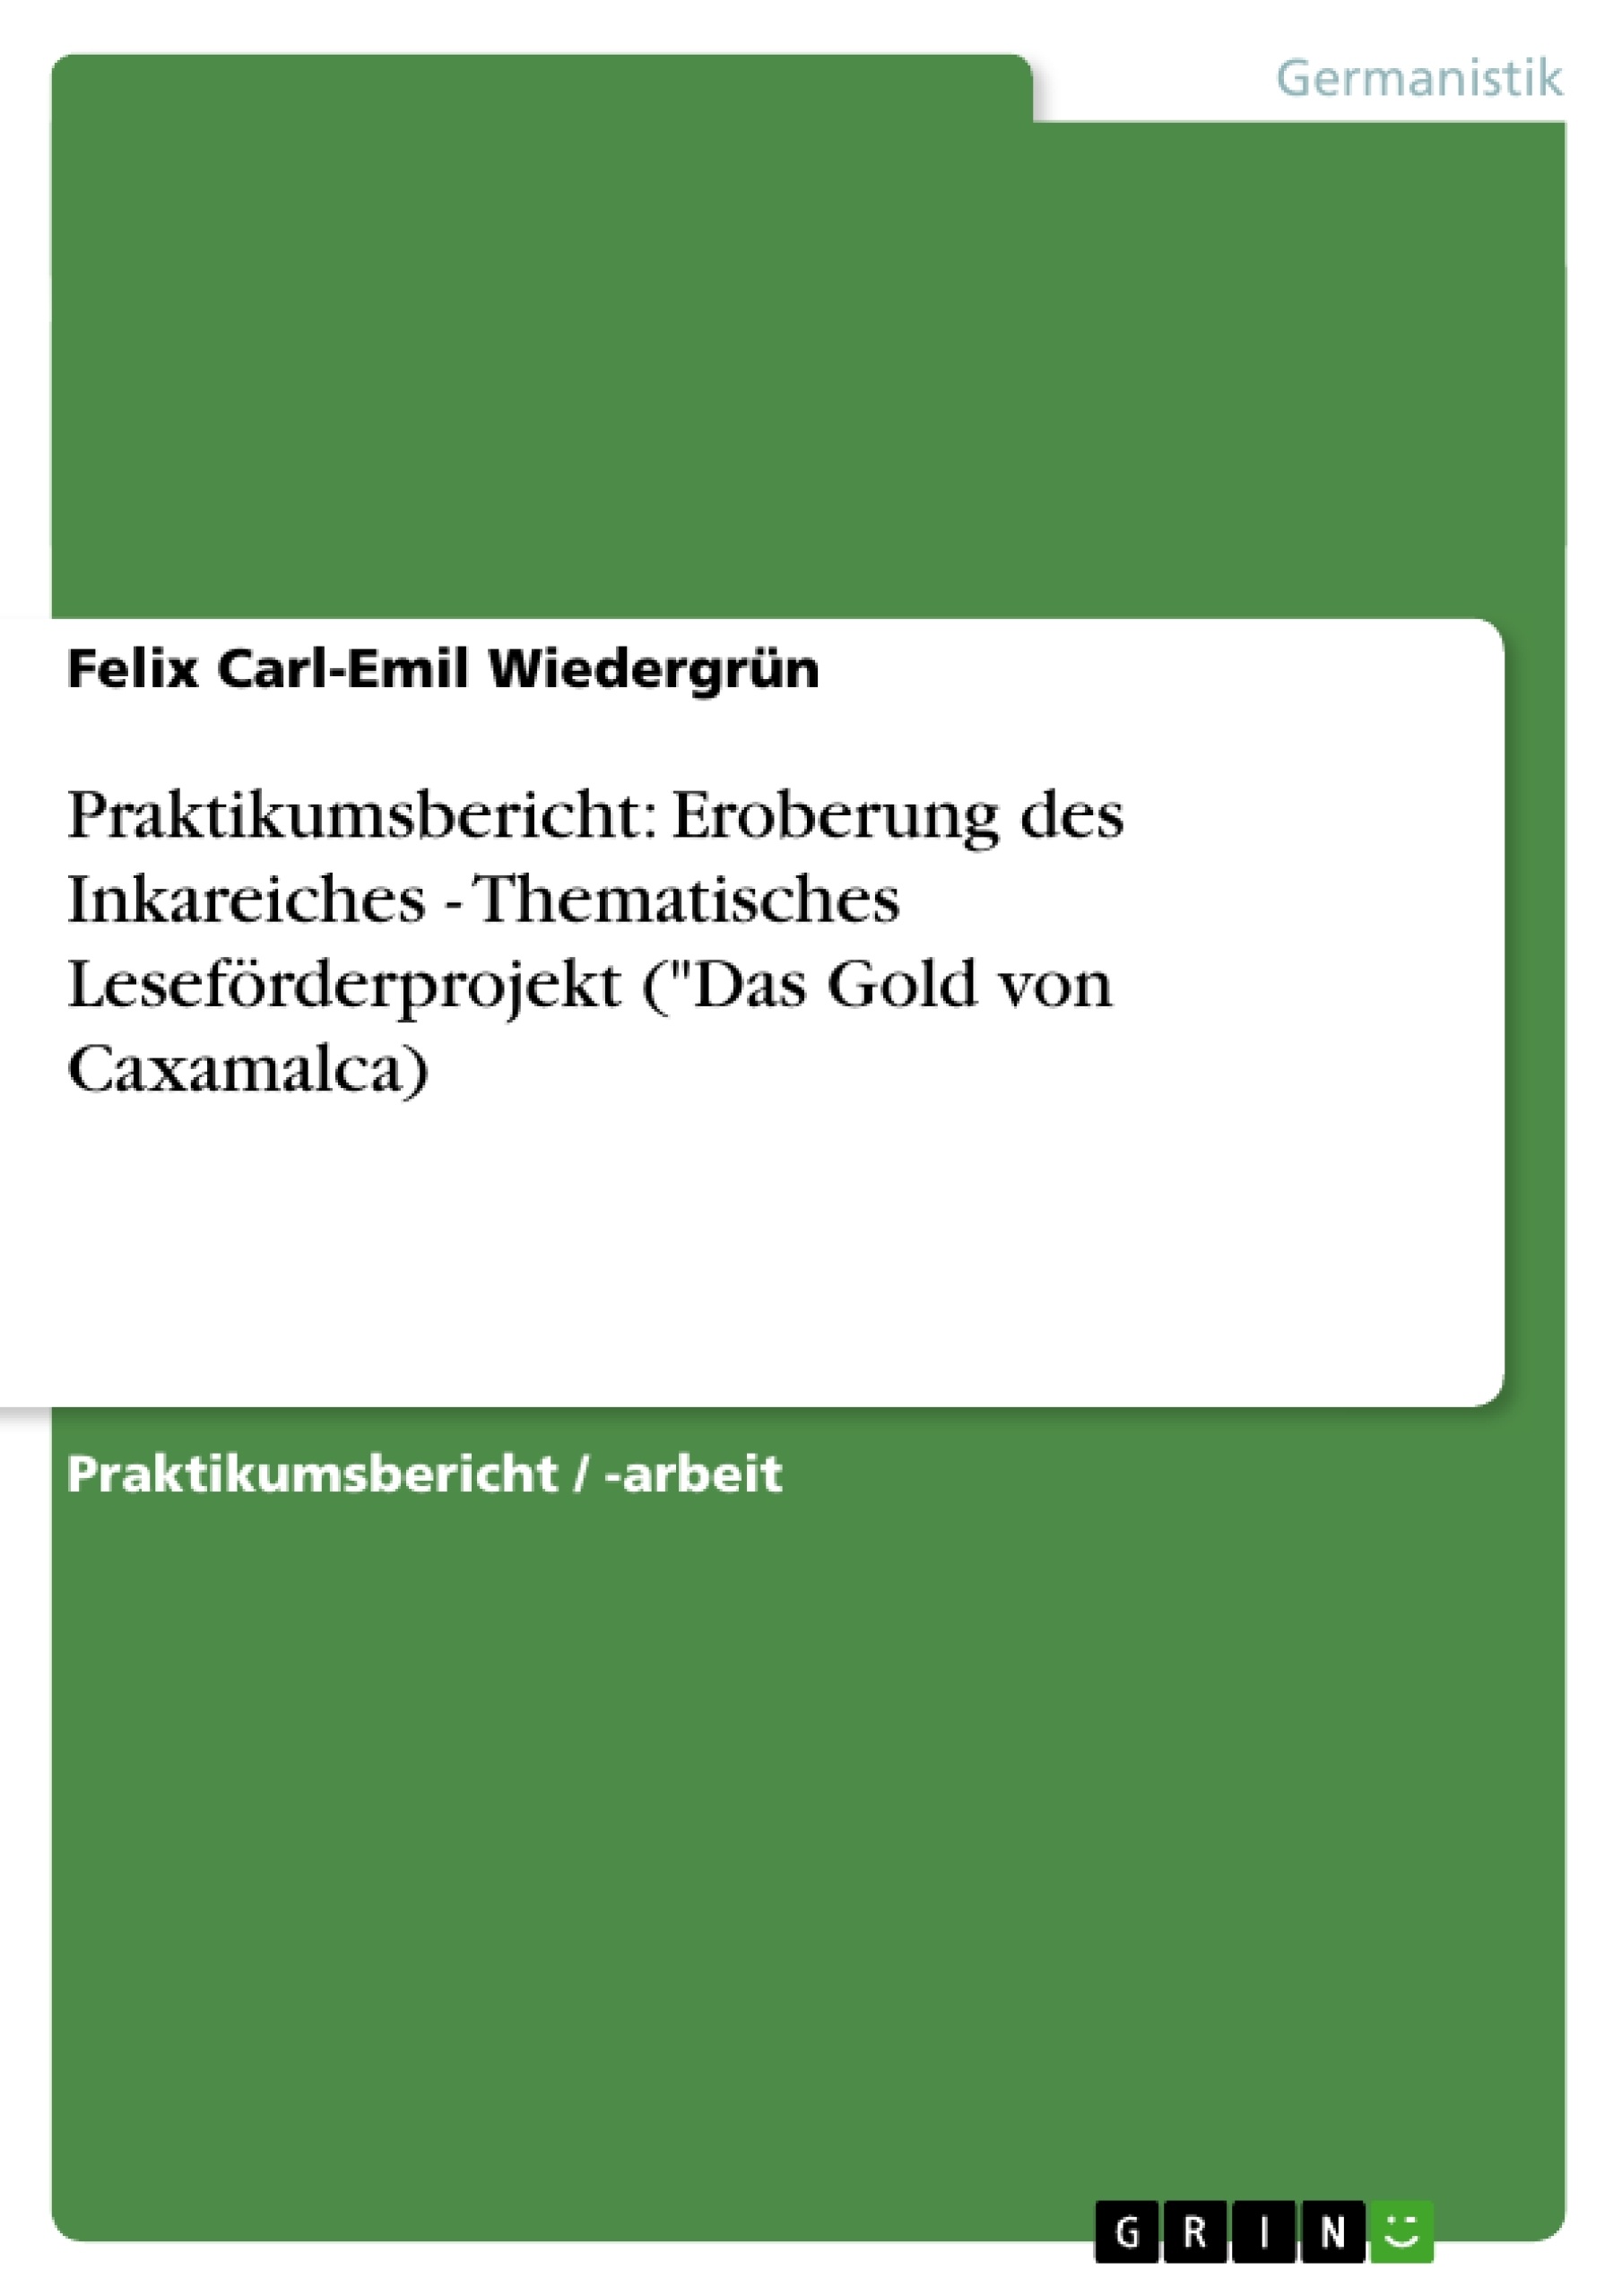 Title: Praktikumsbericht: Eroberung des Inkareiches - Thematisches Leseförderprojekt ("Das Gold von Caxamalca)